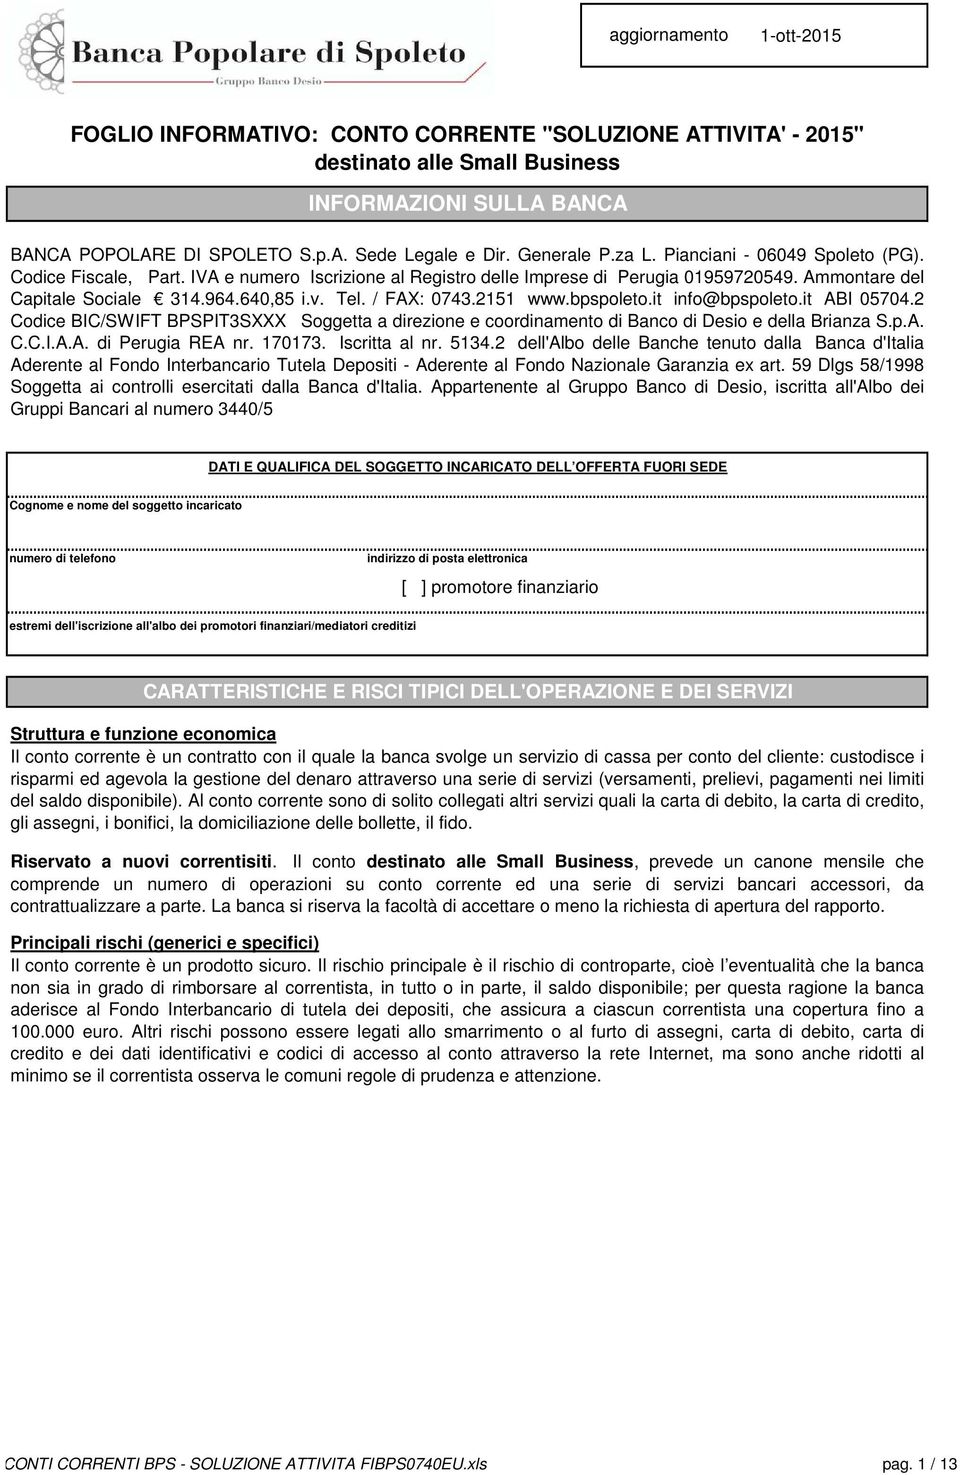 / FAX: 0743.2151 www.bpspoleto.it info@bpspoleto.it ABI 05704.2 Codice BIC/SWIFT BPSPIT3SXXX Soggetta a direzione e coordinamento di Banco di Desio e della Brianza S.p.A. C.C.I.A.A. di Perugia REA nr.